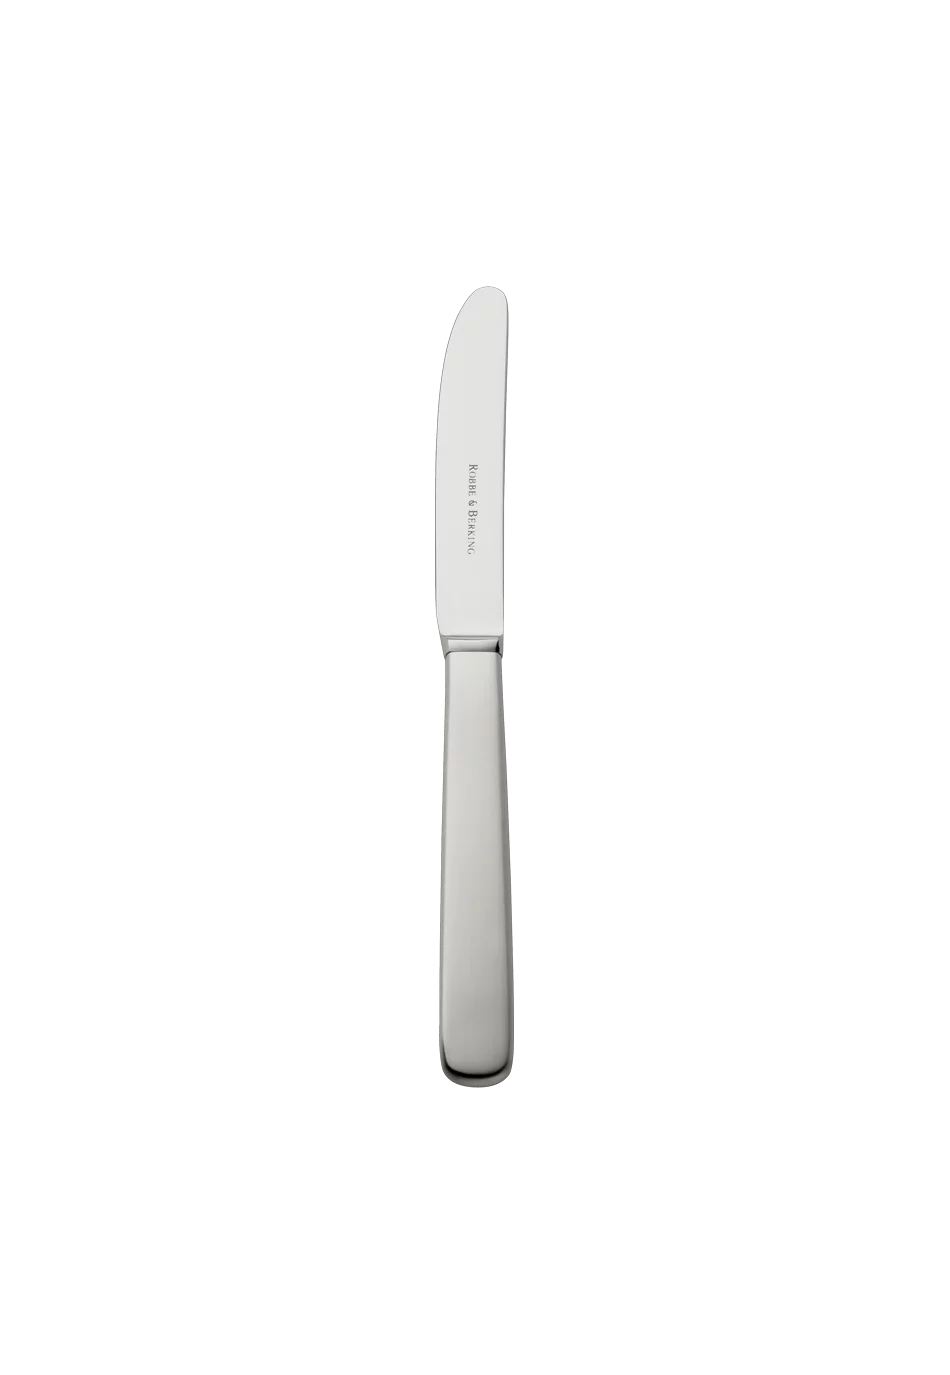 Atlantic Cake Knife / Fruit Knife (18/8 stainless steel)